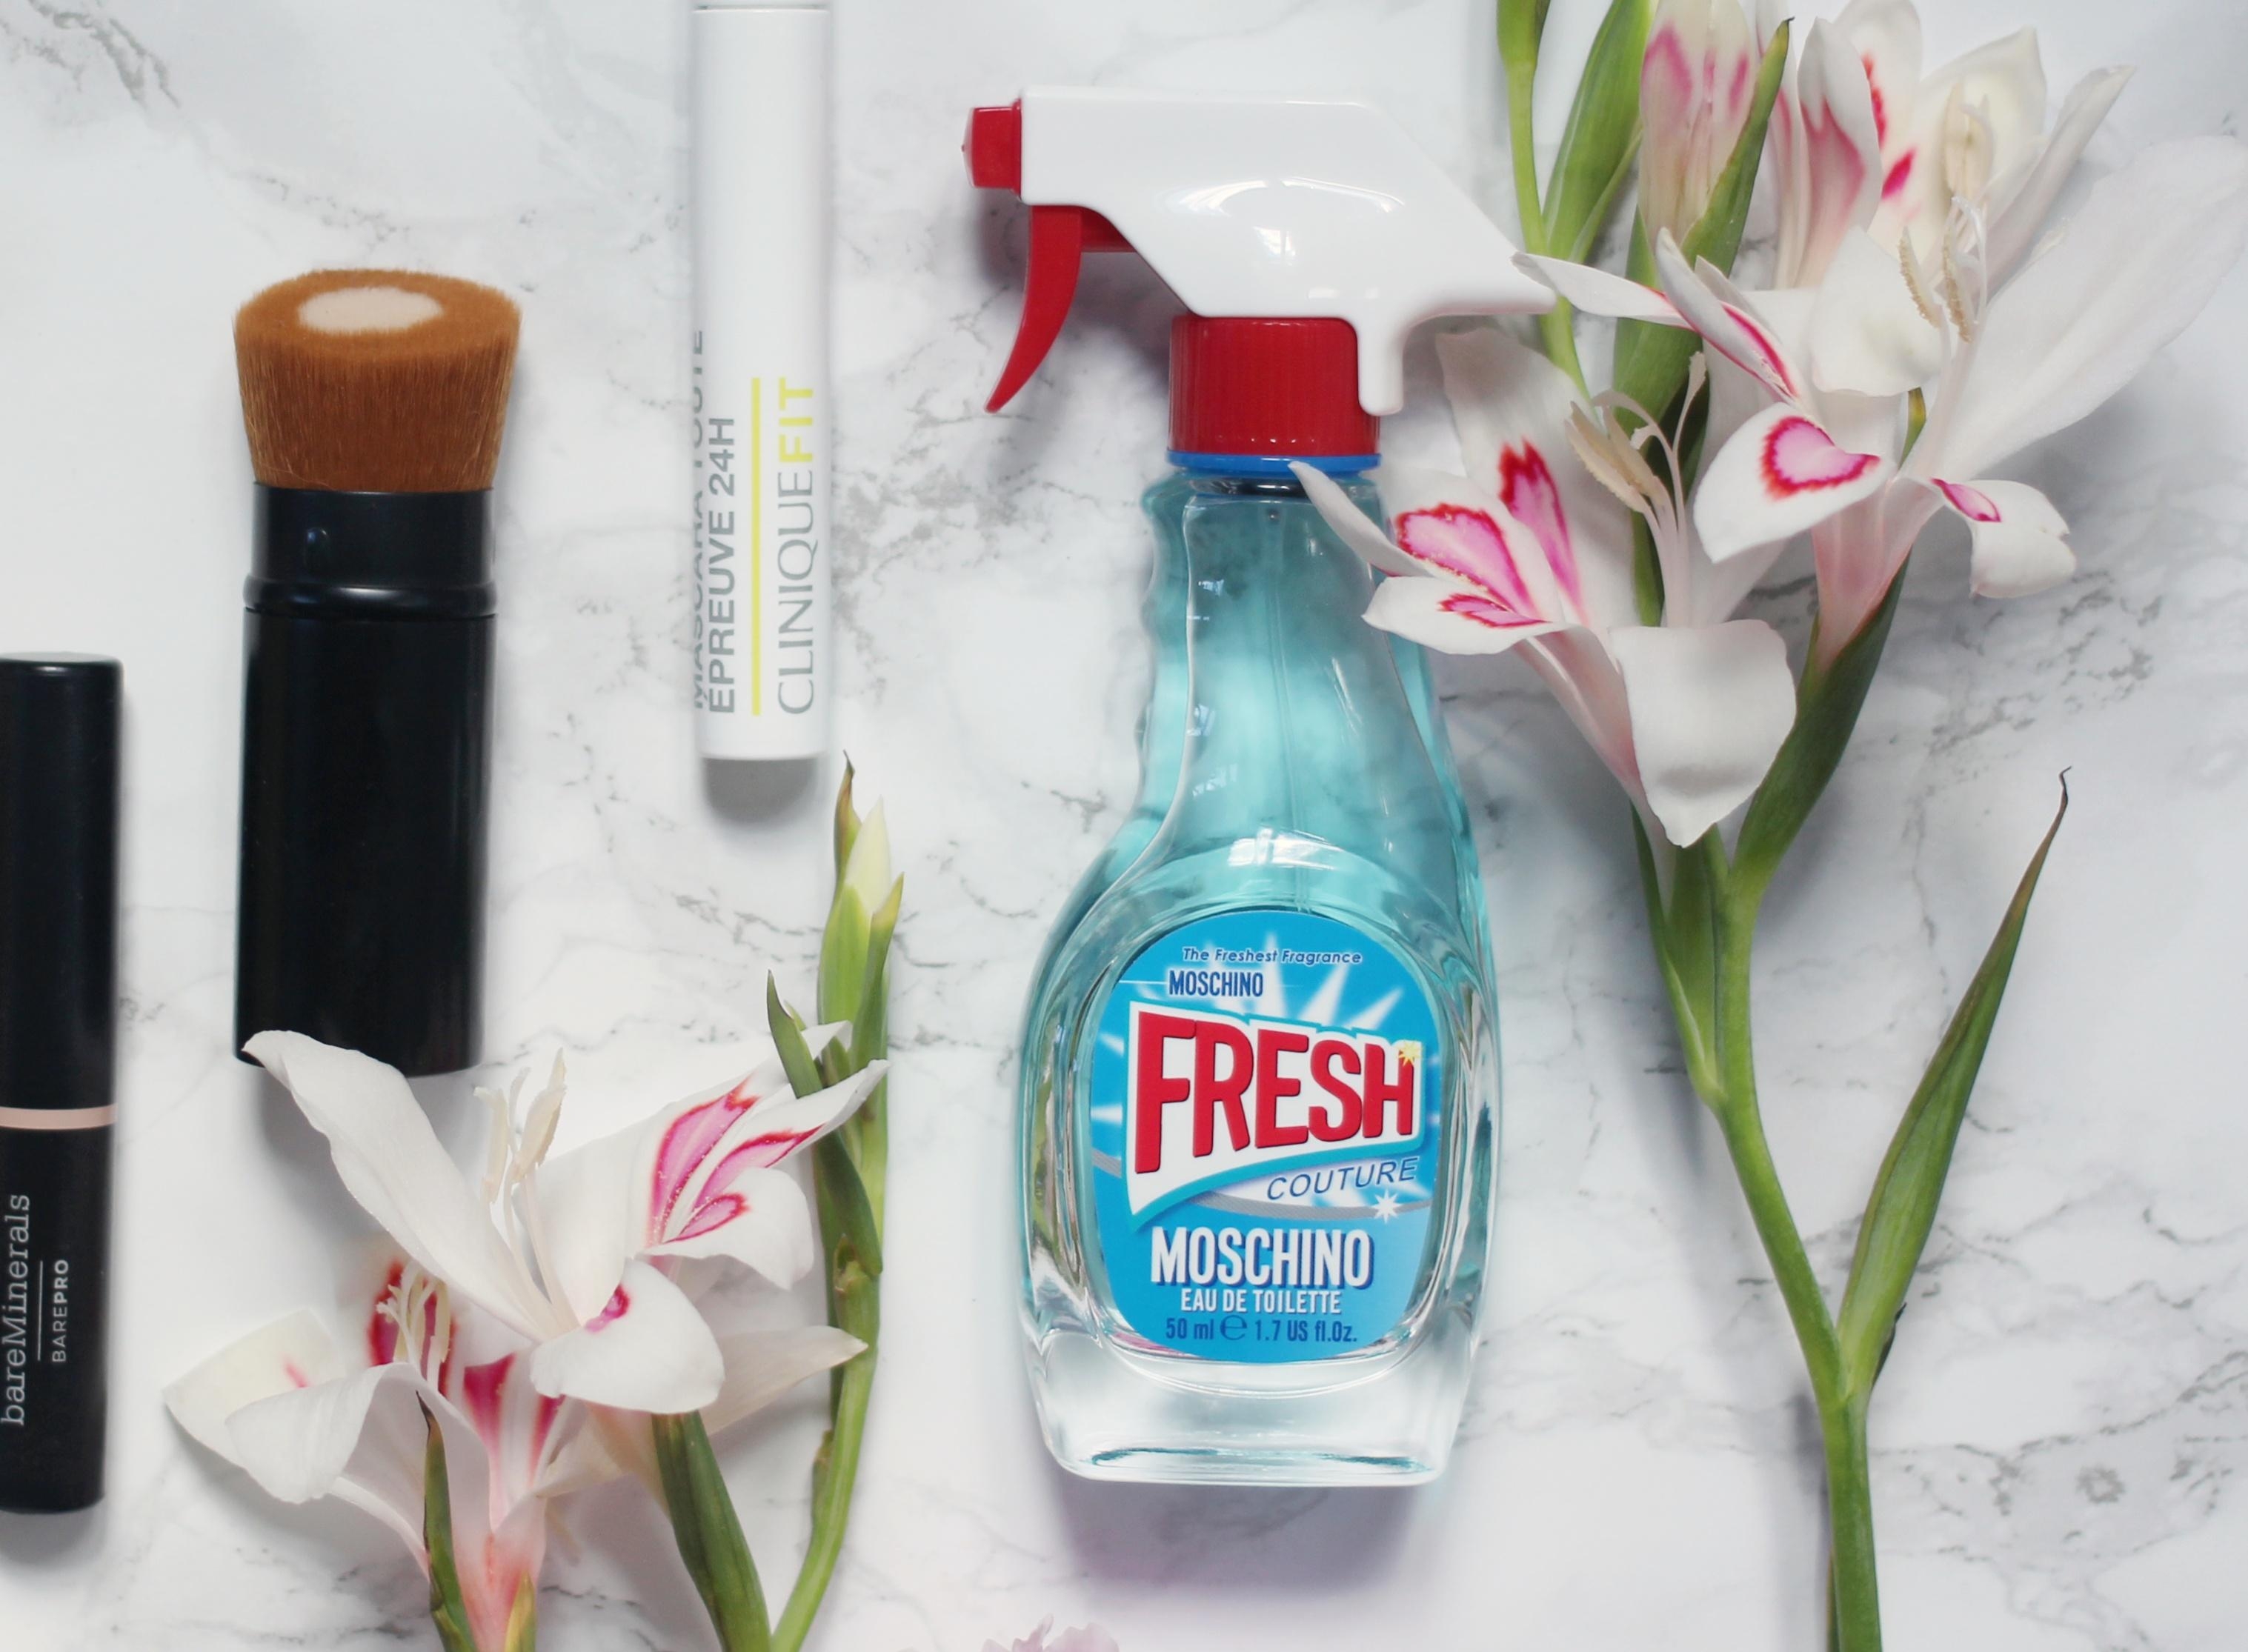 Mein liebstes #parfum ist "Fresh Couture" von Moschino. Toller Sommerduft! #beautychallenge 